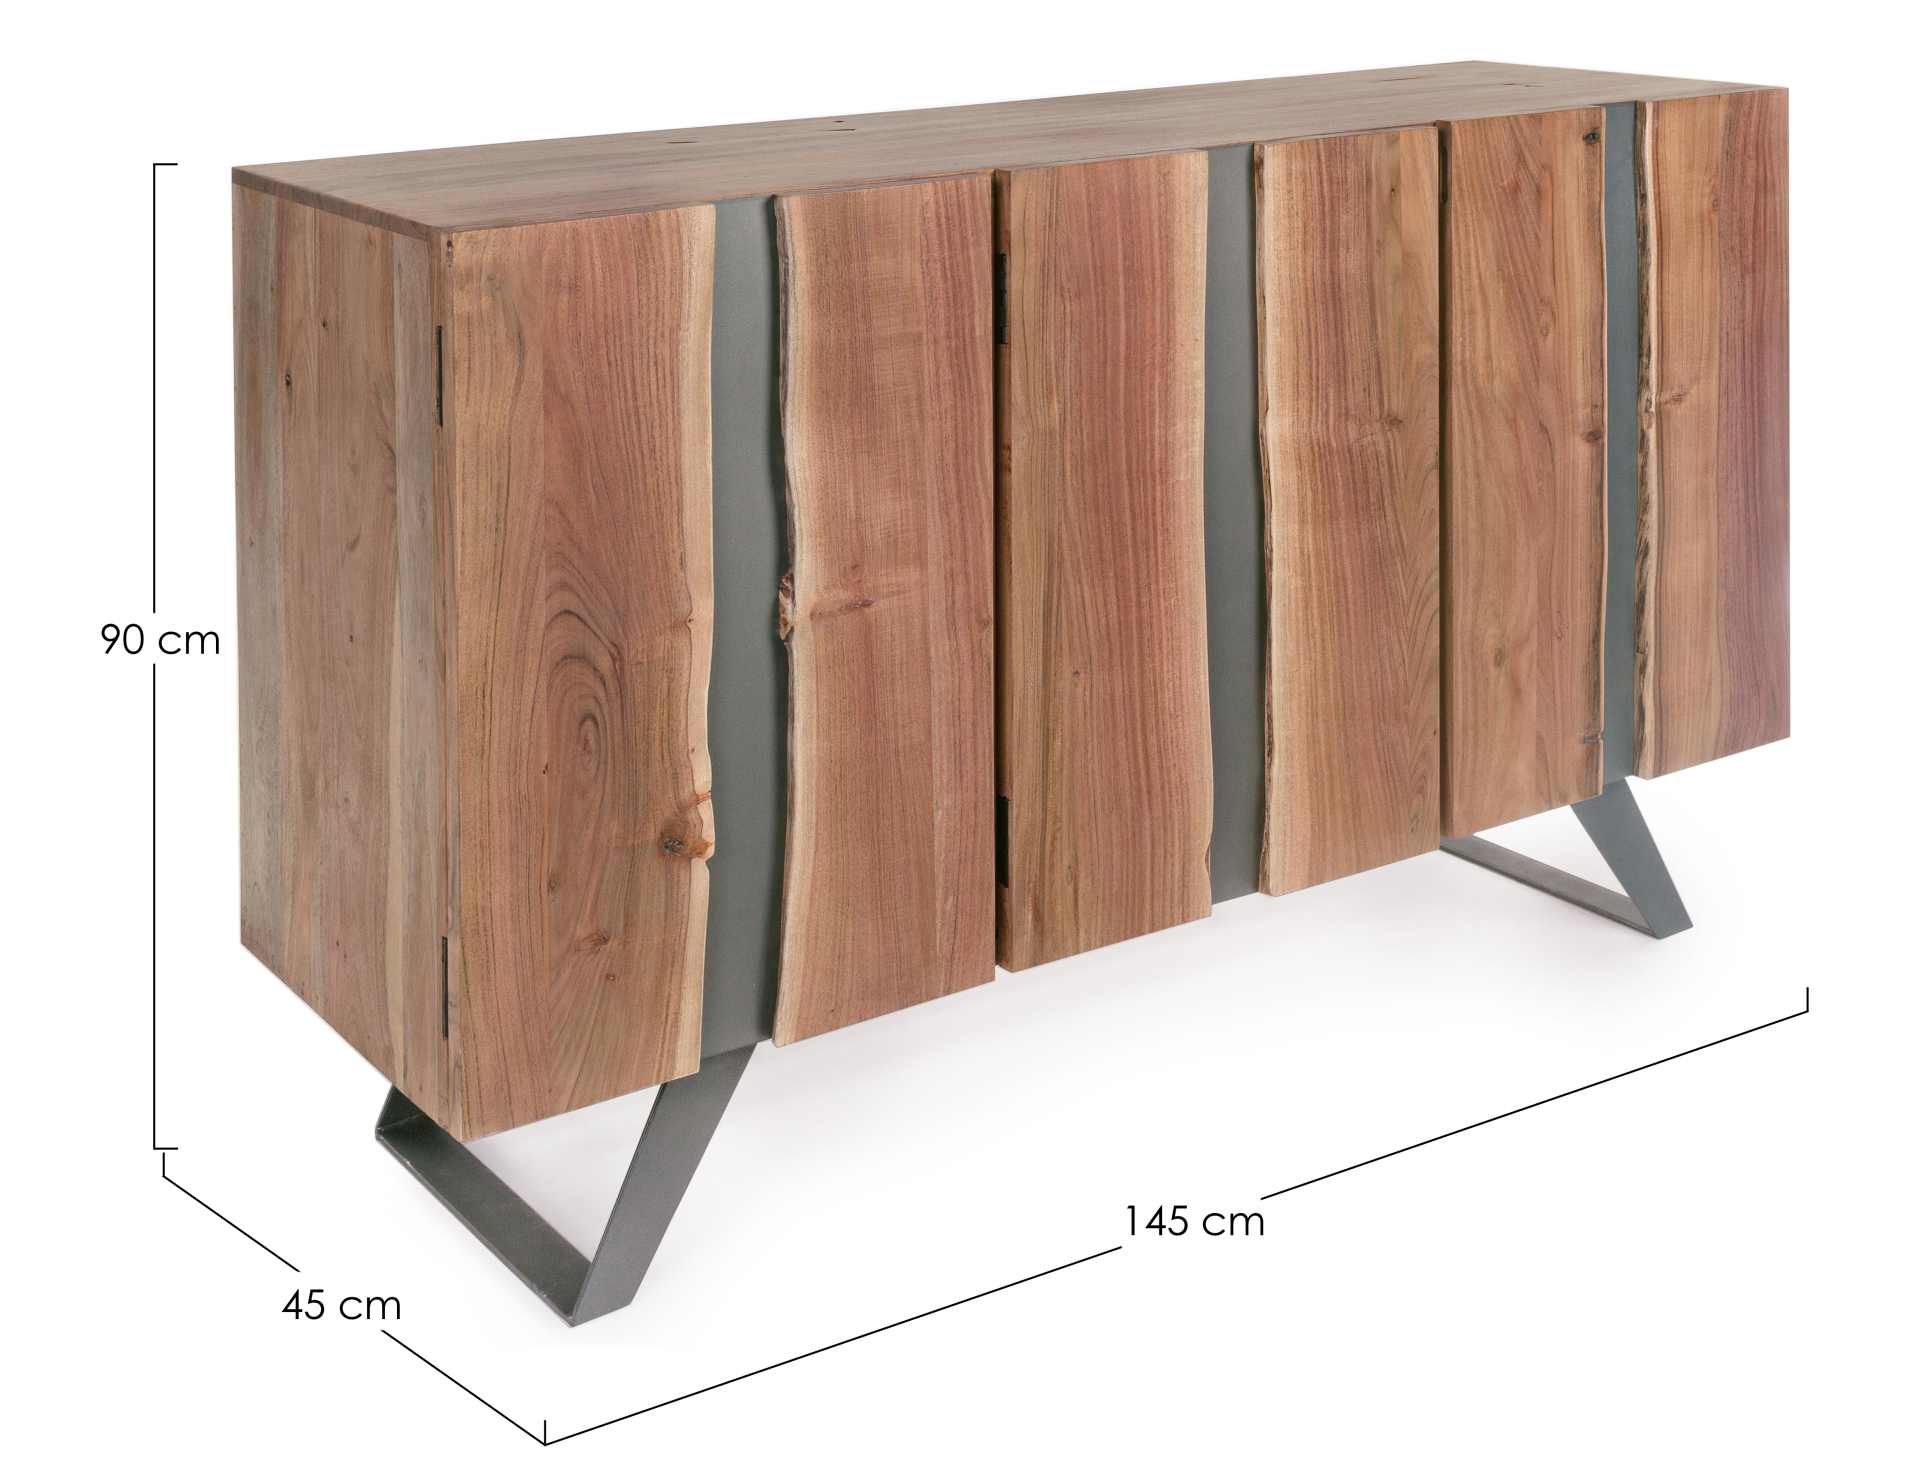 Das Sideboard Aron überzeugt mit seinem modernen Design. Gefertigt wurde es aus Akazien-Holz, welches einen natürlichen Farbton besitzt. Das Gestell ist aus Metall und hat eine schwarze Farbe. Das Sideboard verfügt über drei Türen. Die Breite beträgt 1454